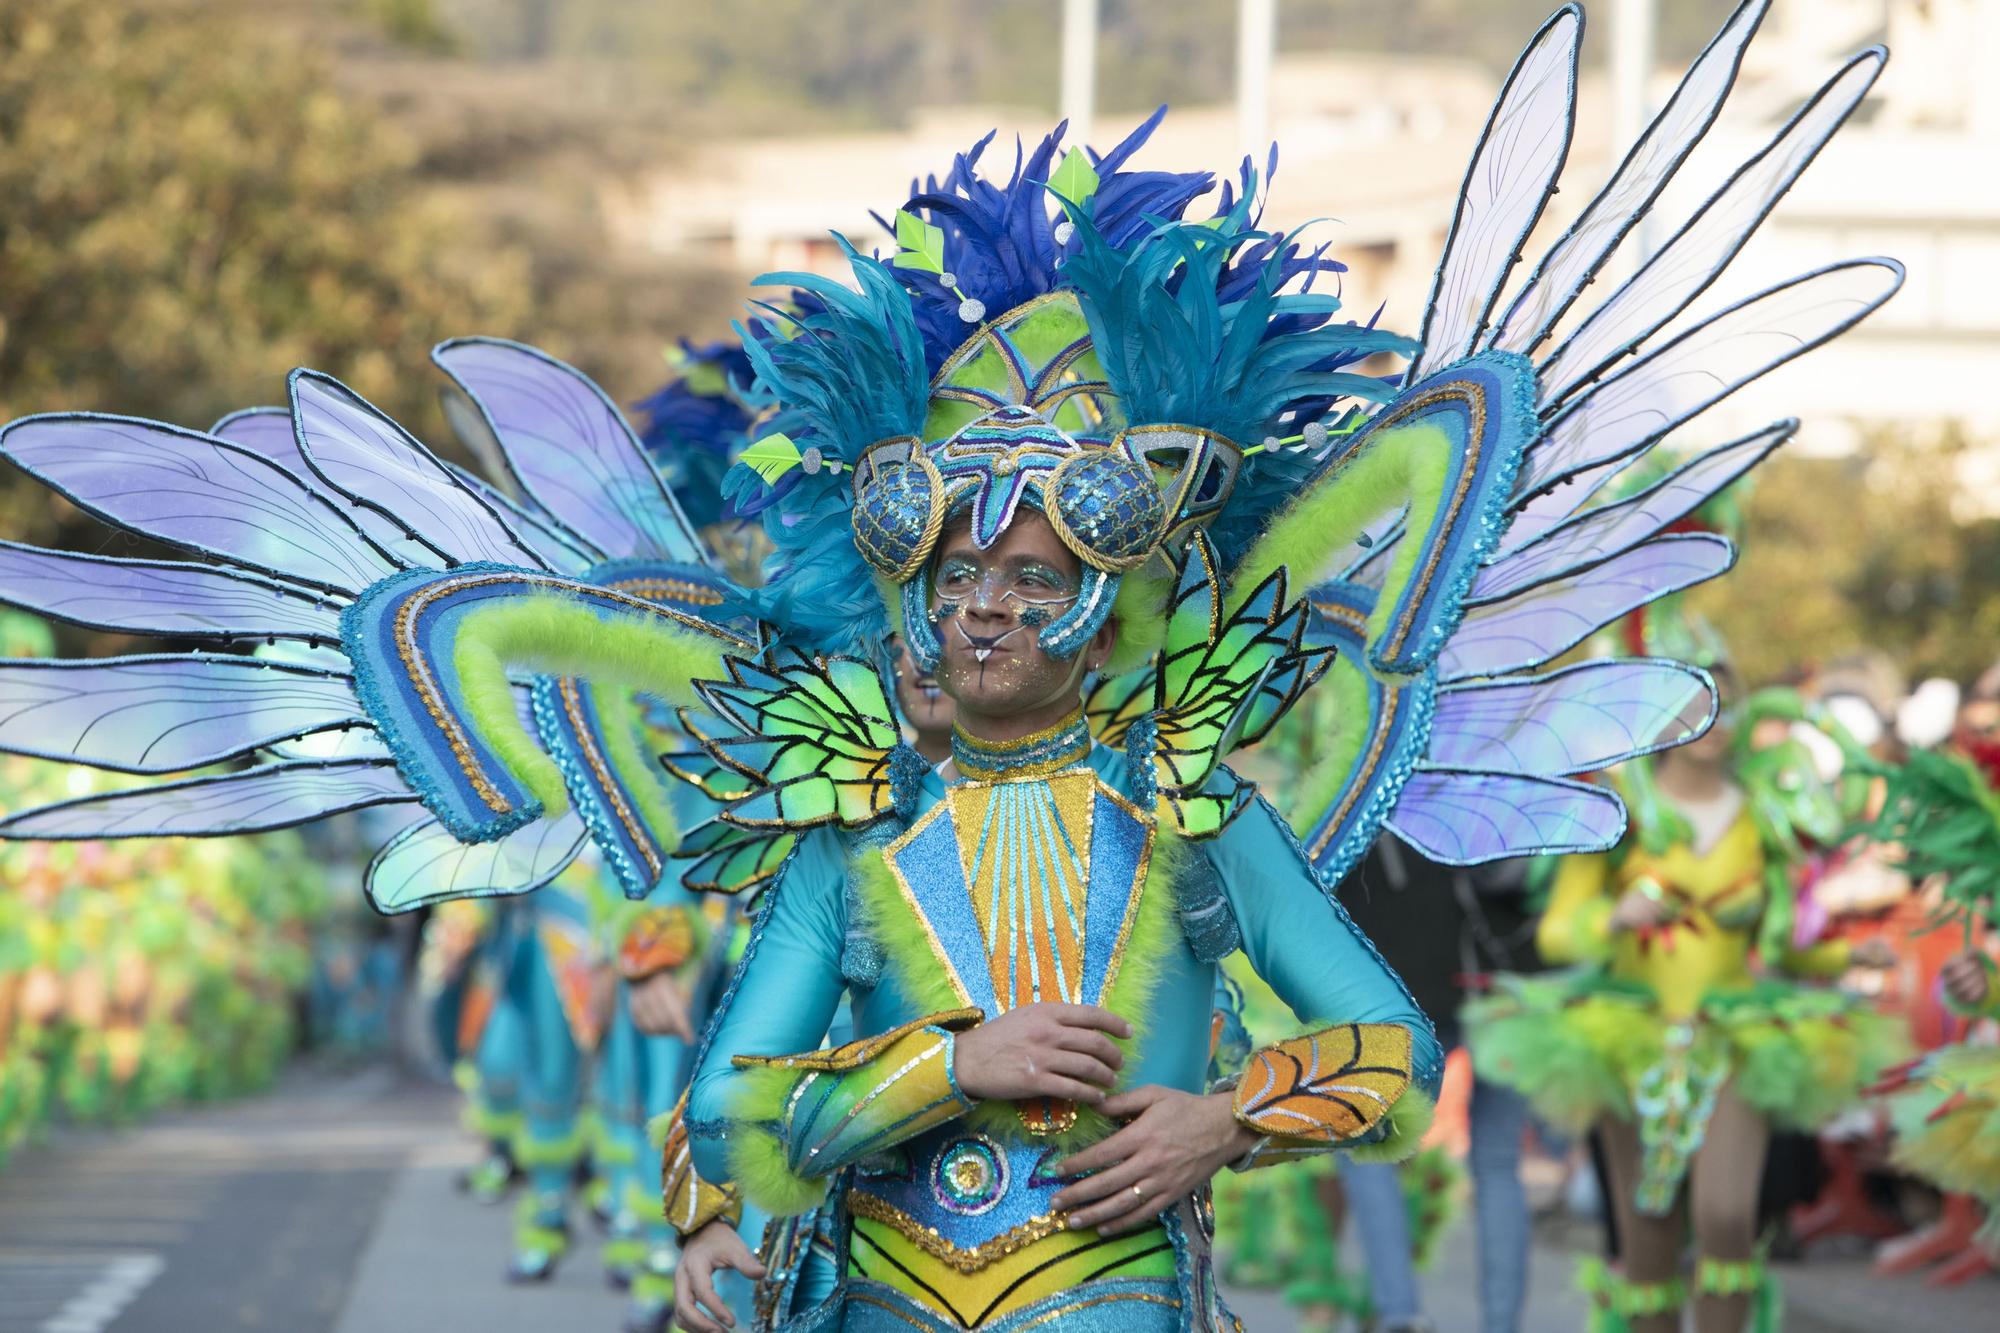 Totes les imatges del Carnaval de Tossa